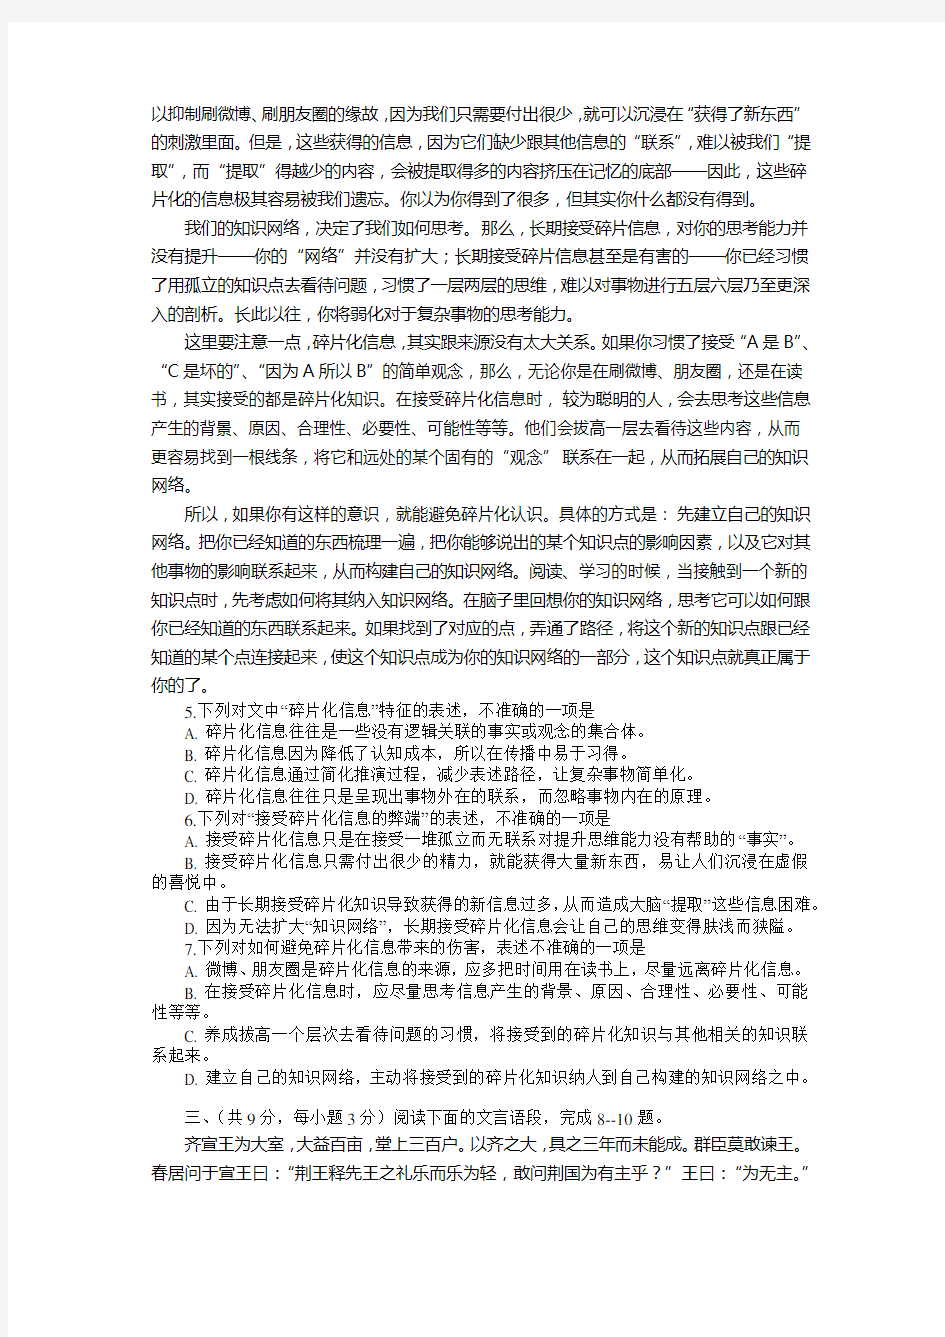 2016-1-21武汉市元月调考语文试卷及答案